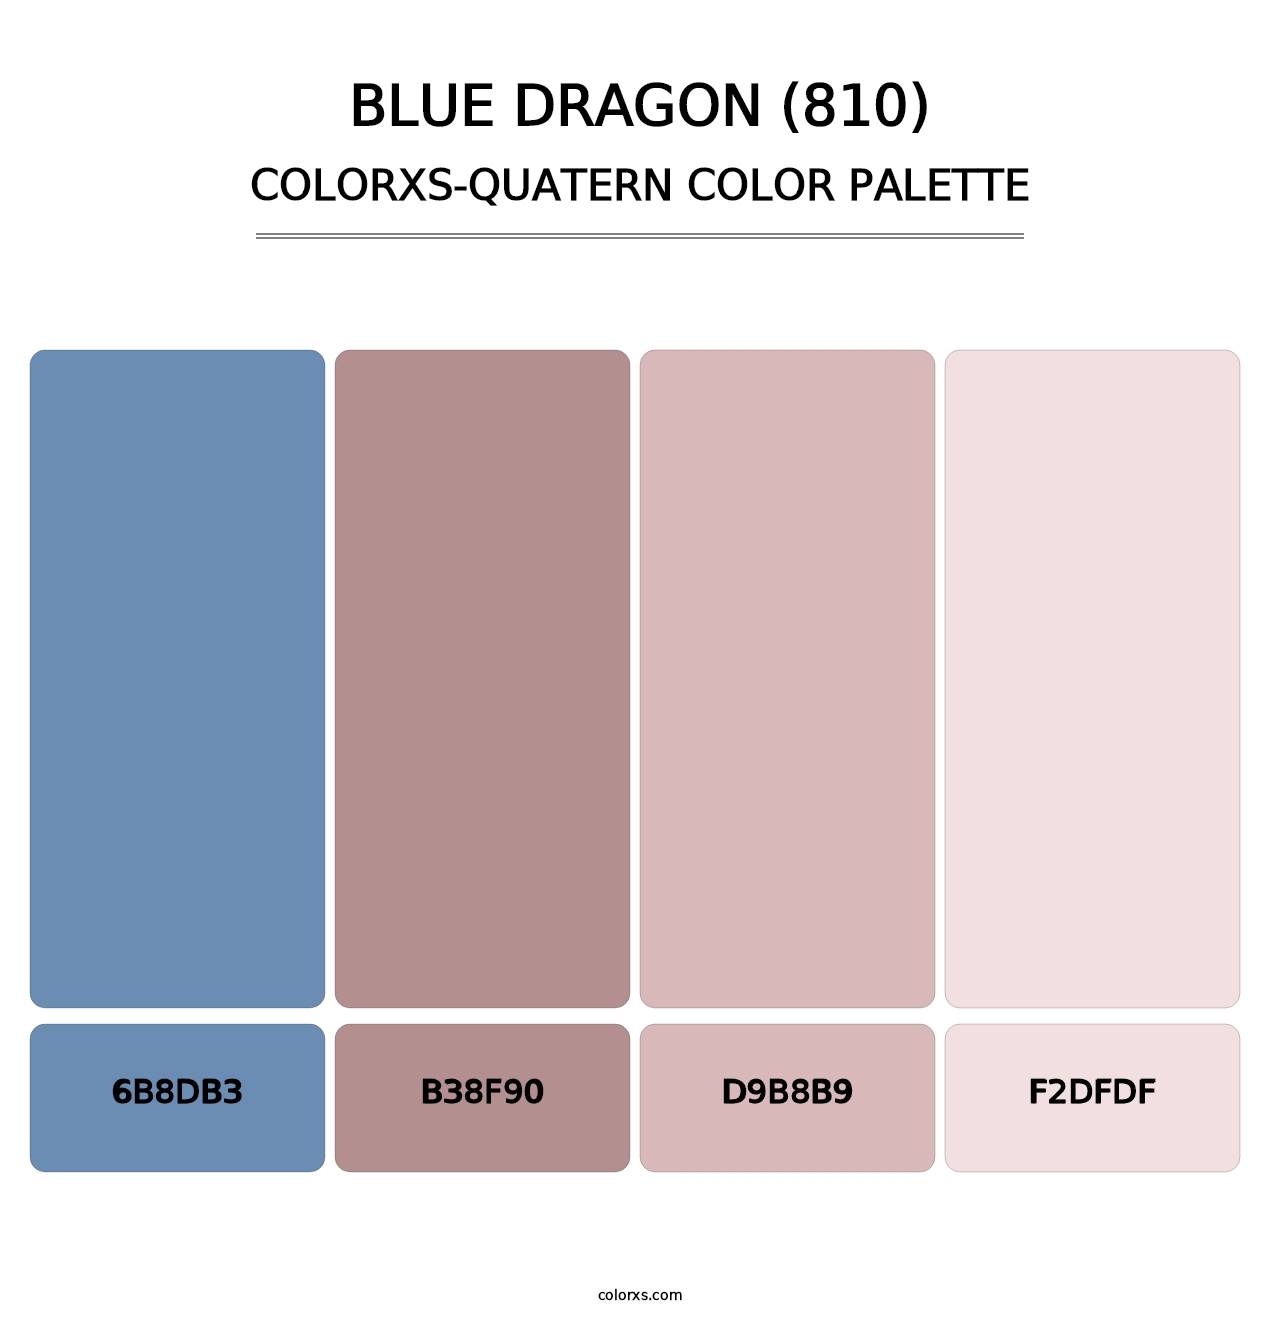 Blue Dragon (810) - Colorxs Quatern Palette